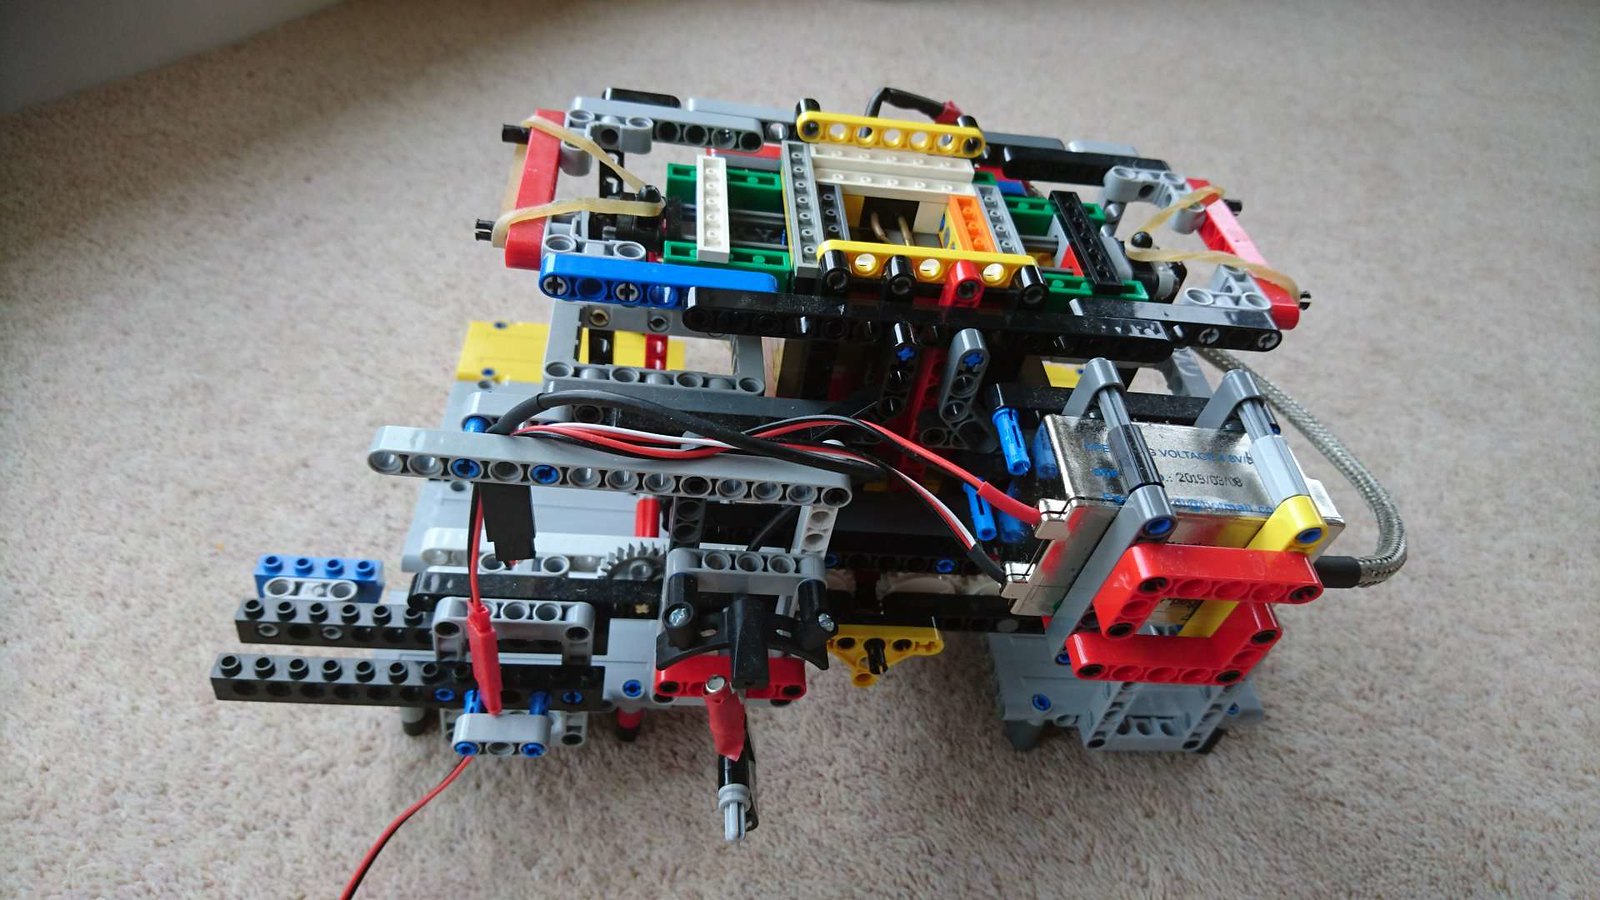 FULL Lego Vacuum Engine Tutorial 